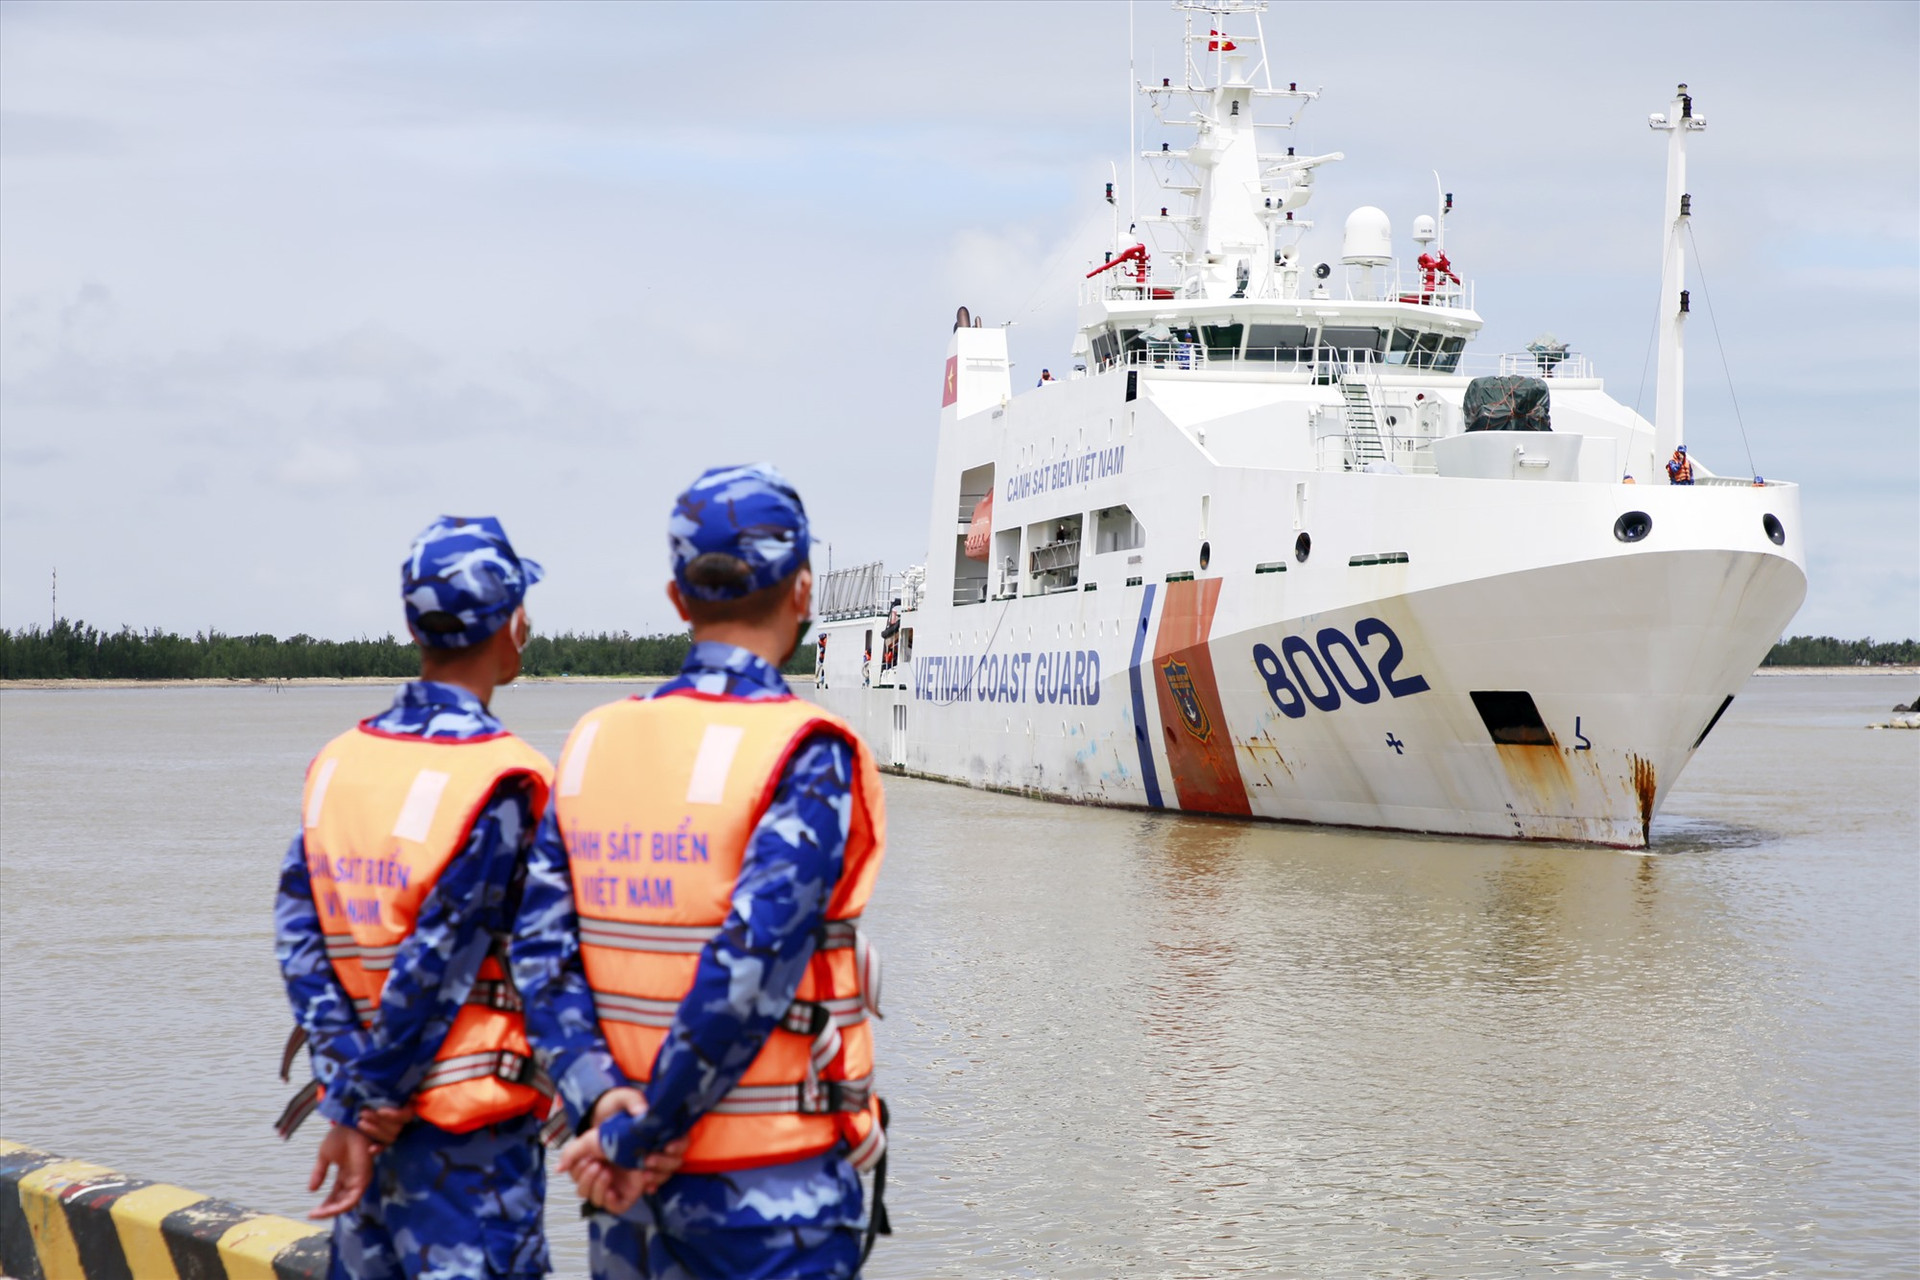 Tàu cảnh sát biển 8002 do Thiếu tá Phạm Văn Chuyền làm thuyền trưởng trong chuyến cứu hộ thành công 11 thuyền viên tại Quảng Ngãi vào tháng 9 vừa qua. Ảnh: P.T